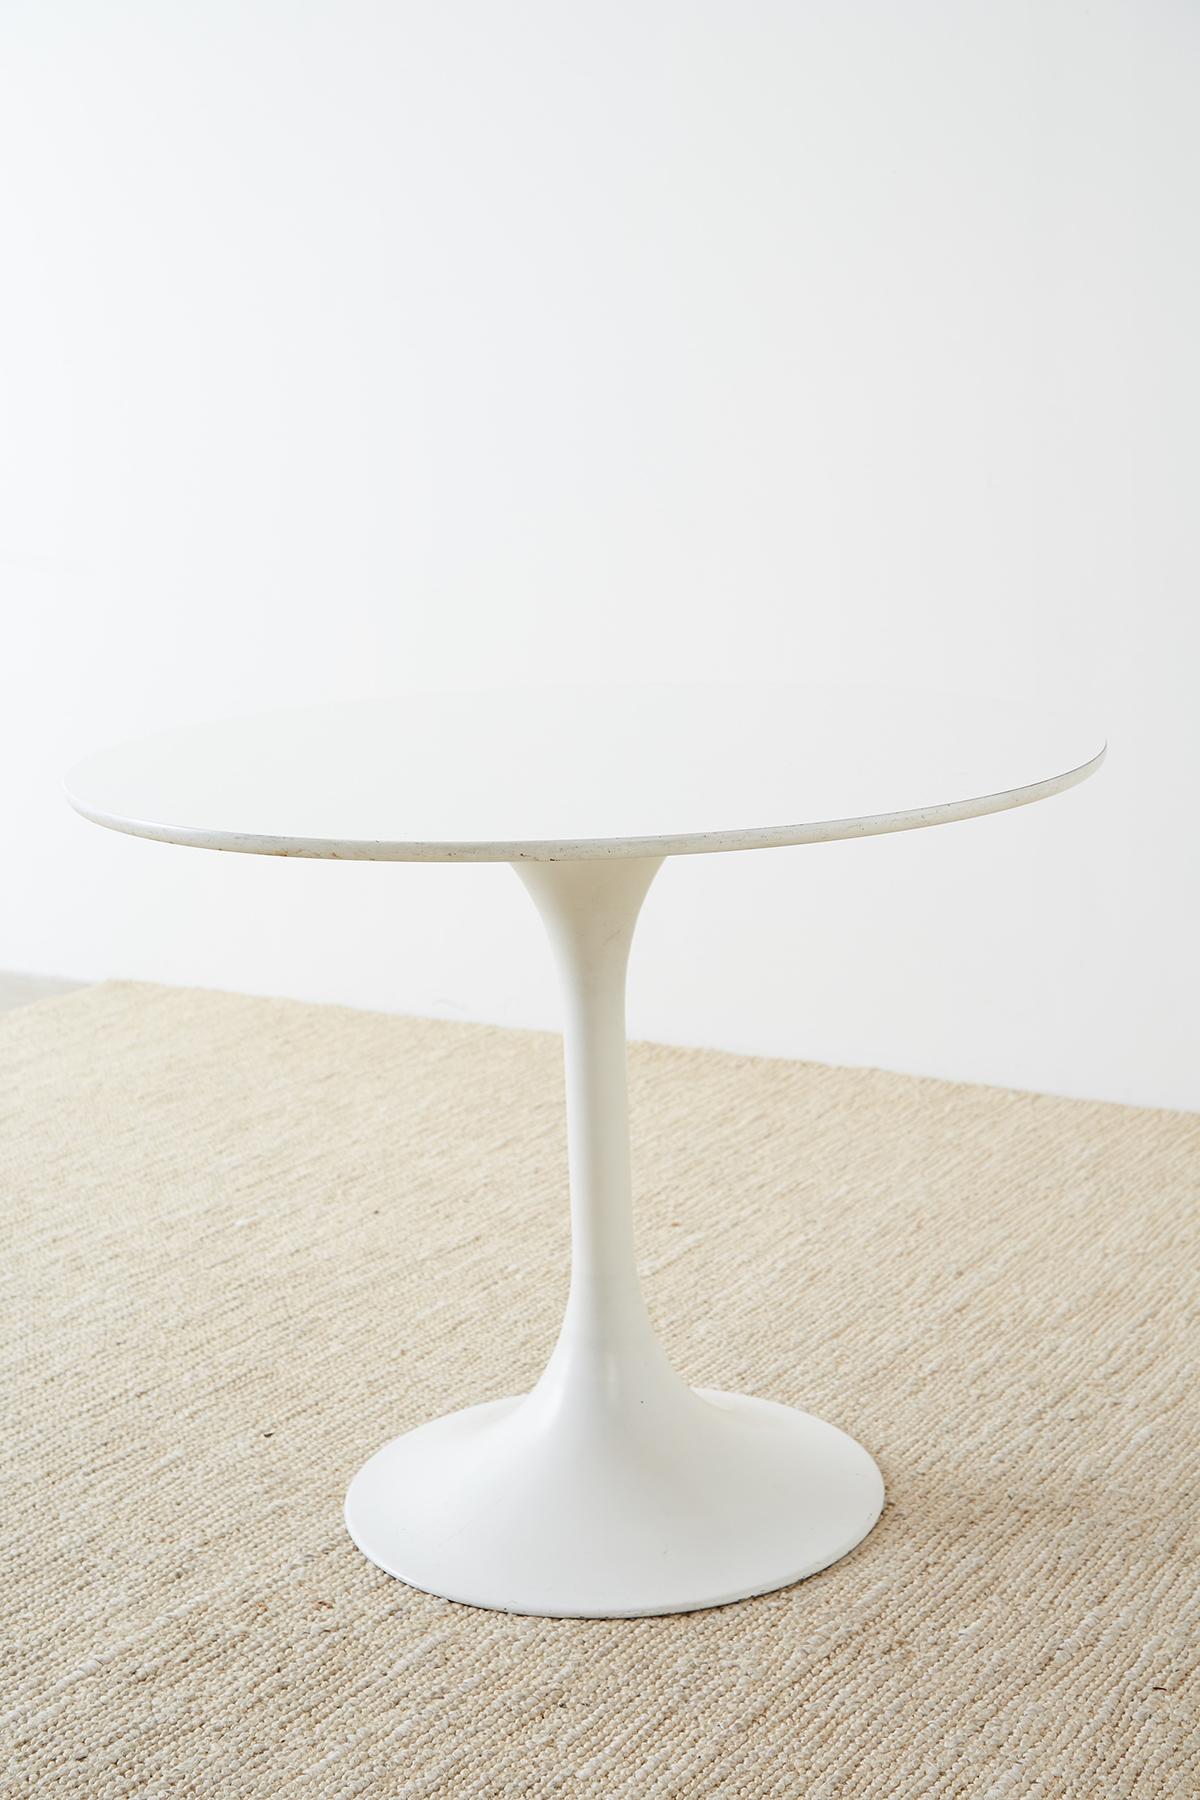 Midcentury Eero Saarinen Style White Tulip Table 1